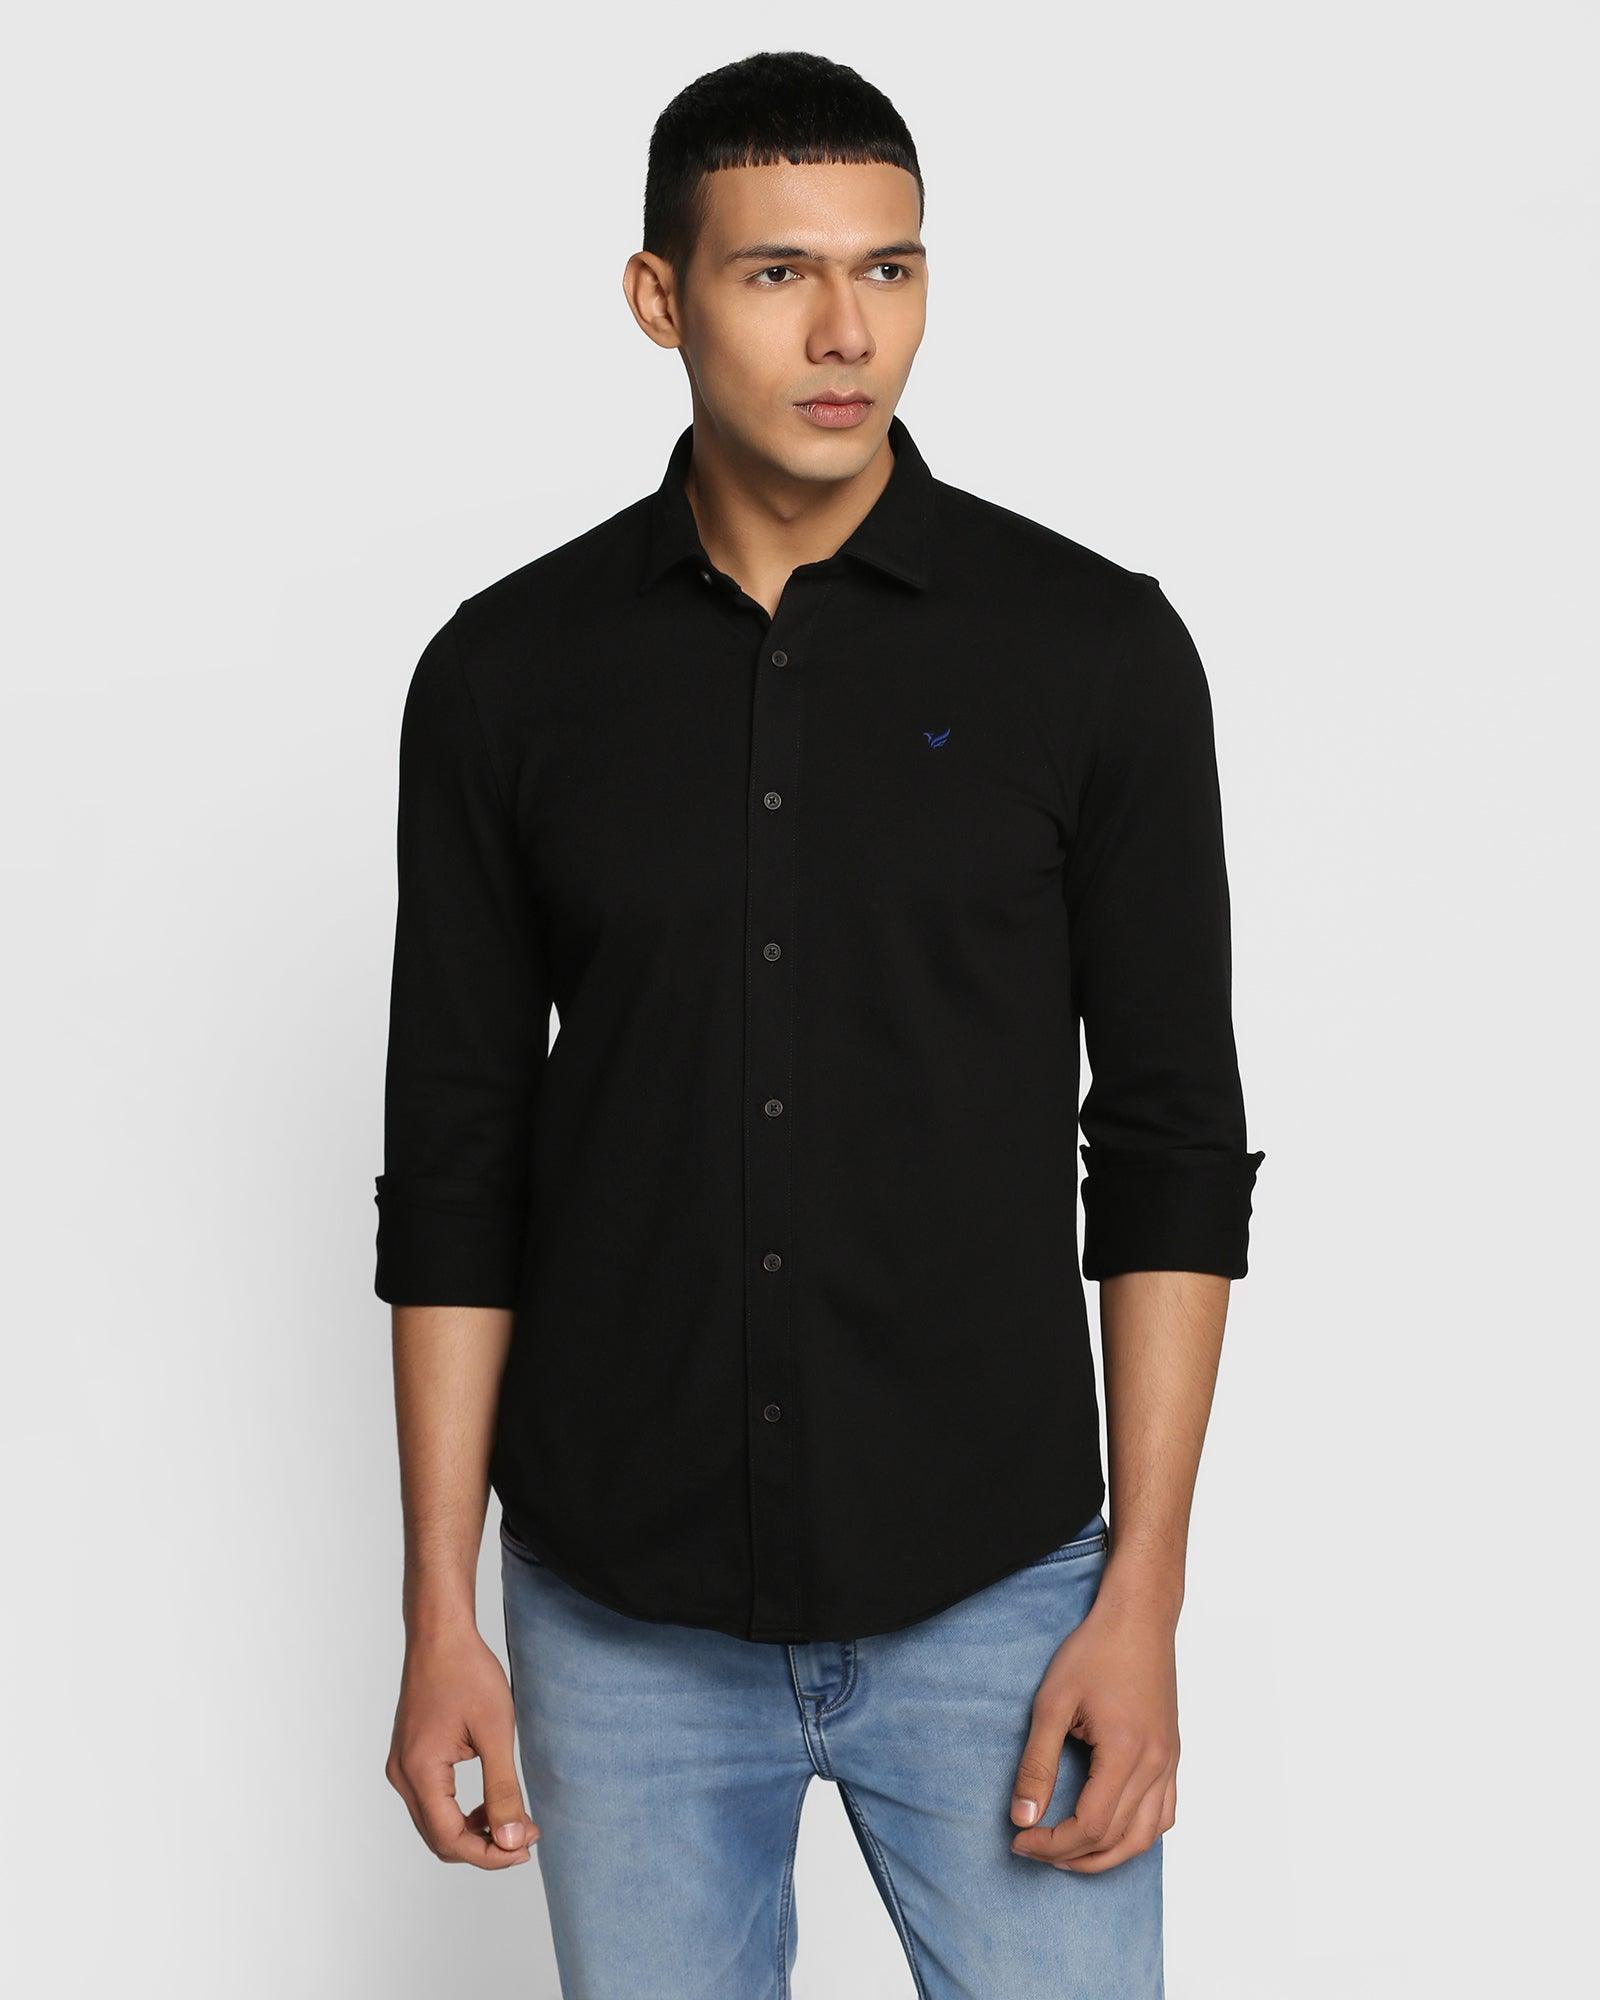 Casual Black Solid Shirt - Nico